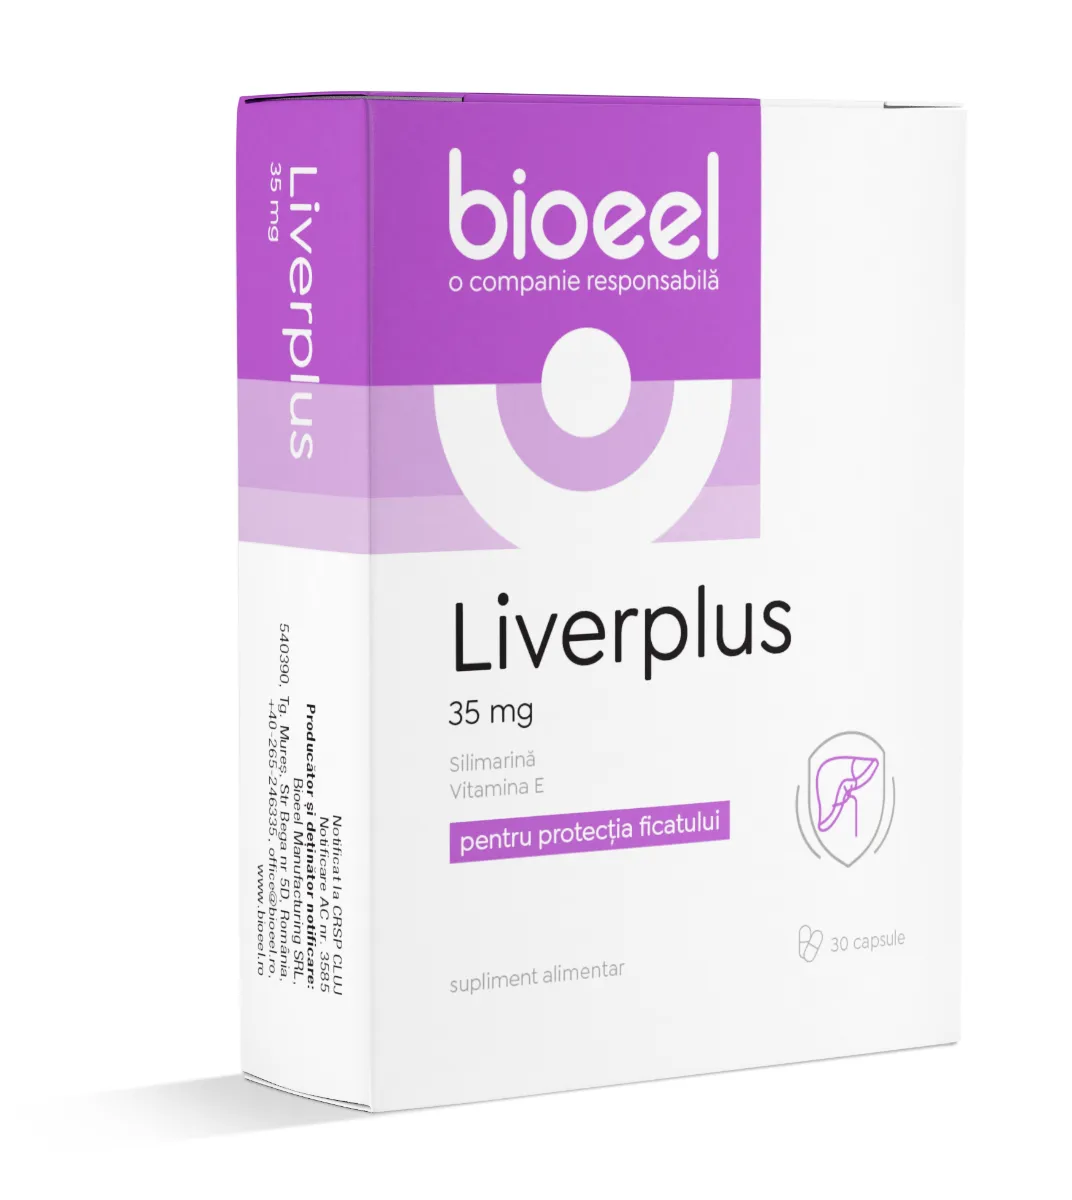 Liverplus 35mg, 80 capsule, Bioeel 